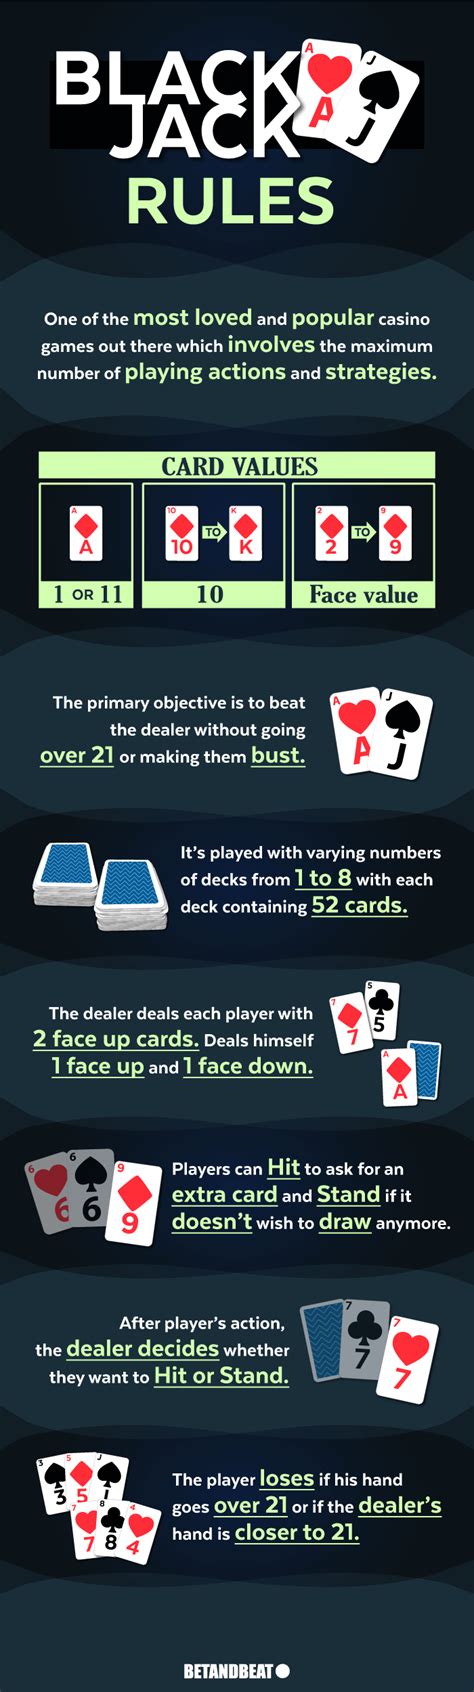 poker blackjack rules